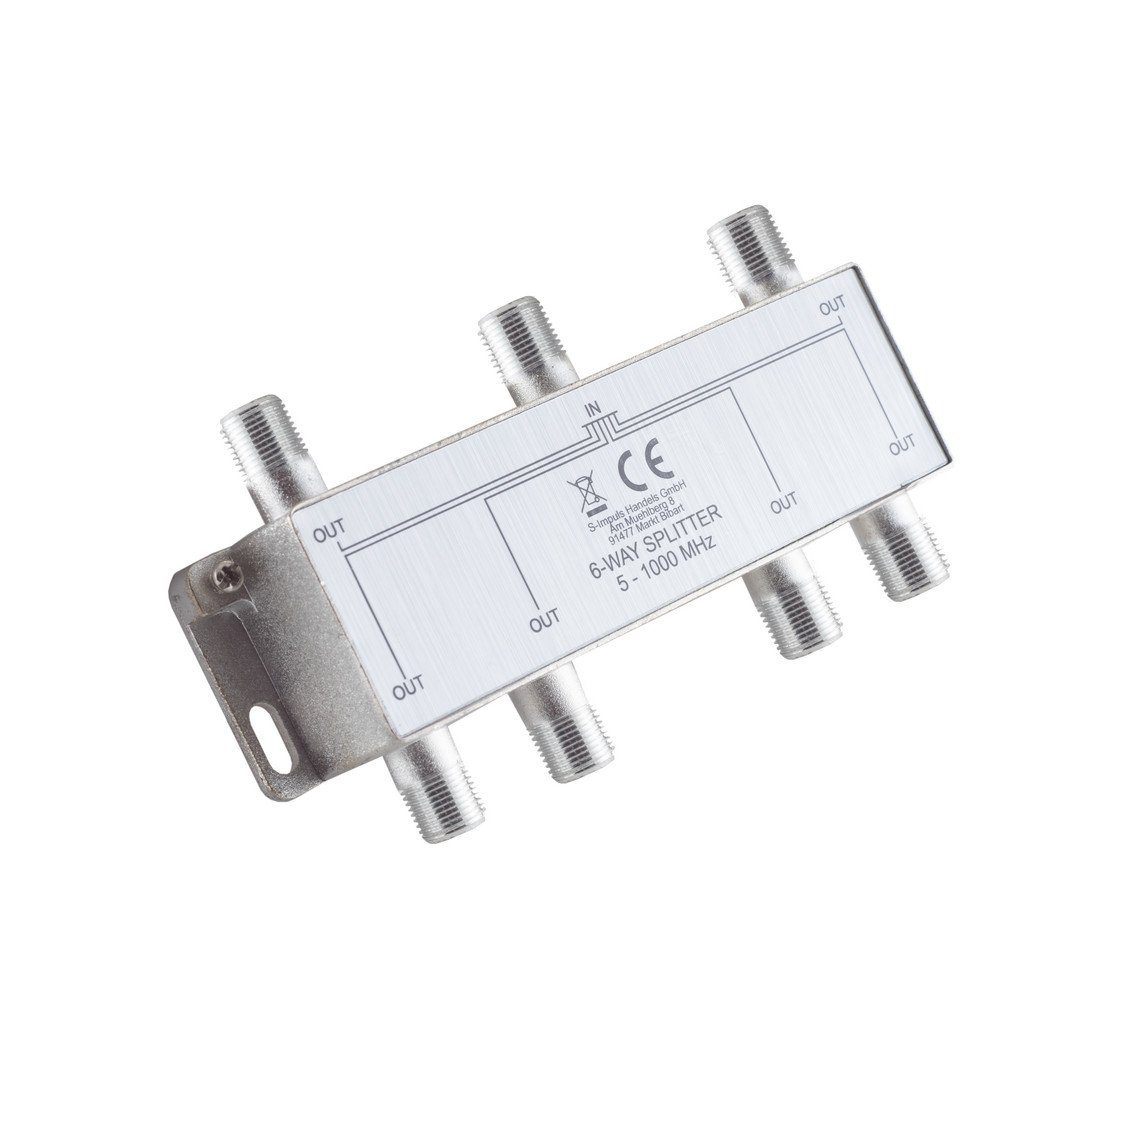 S/CONN maximum connectivity® Koax-Kabelverbinder F-Serie; Stammverteiler; 6-fach; 5-1000 MHz, 85 dB